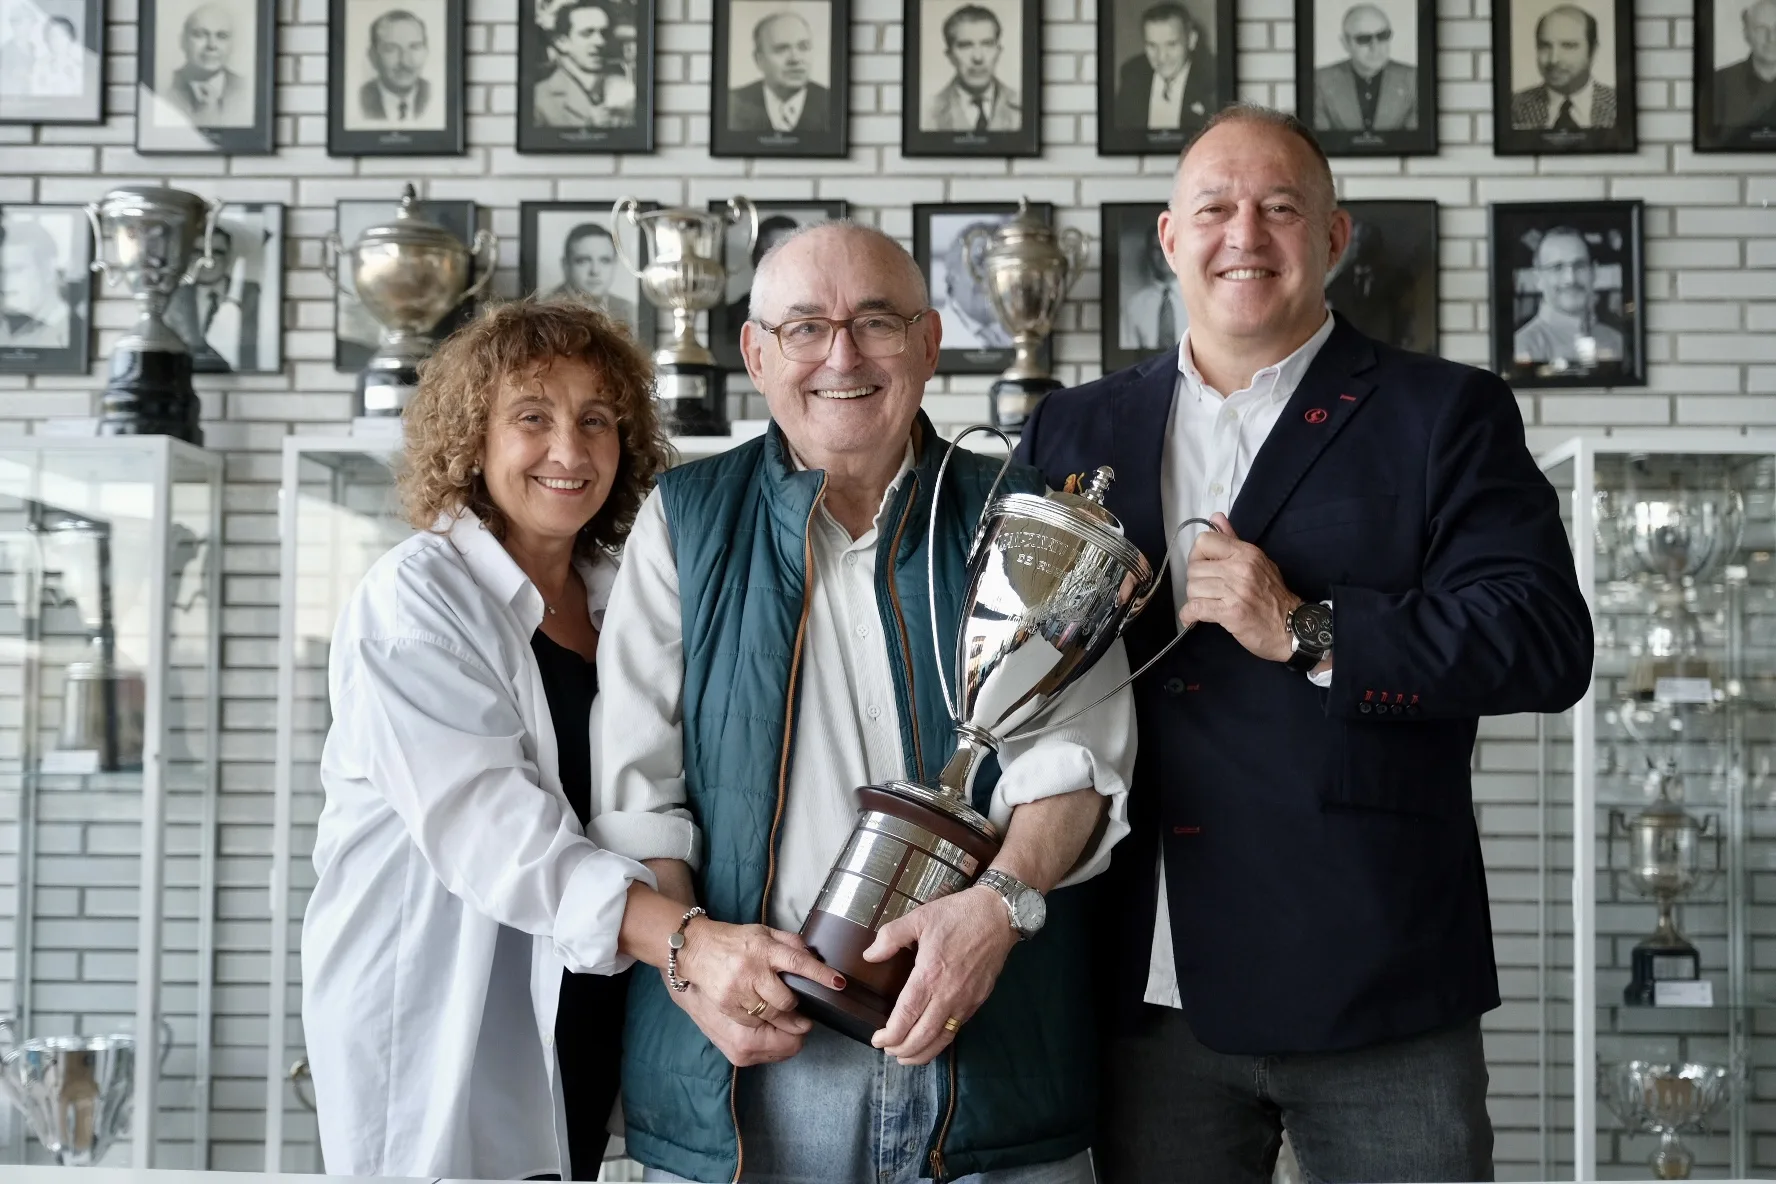 El trofeo Ràfols, nueva presea de la Copa del Rey para honrar la memoria del rugby español